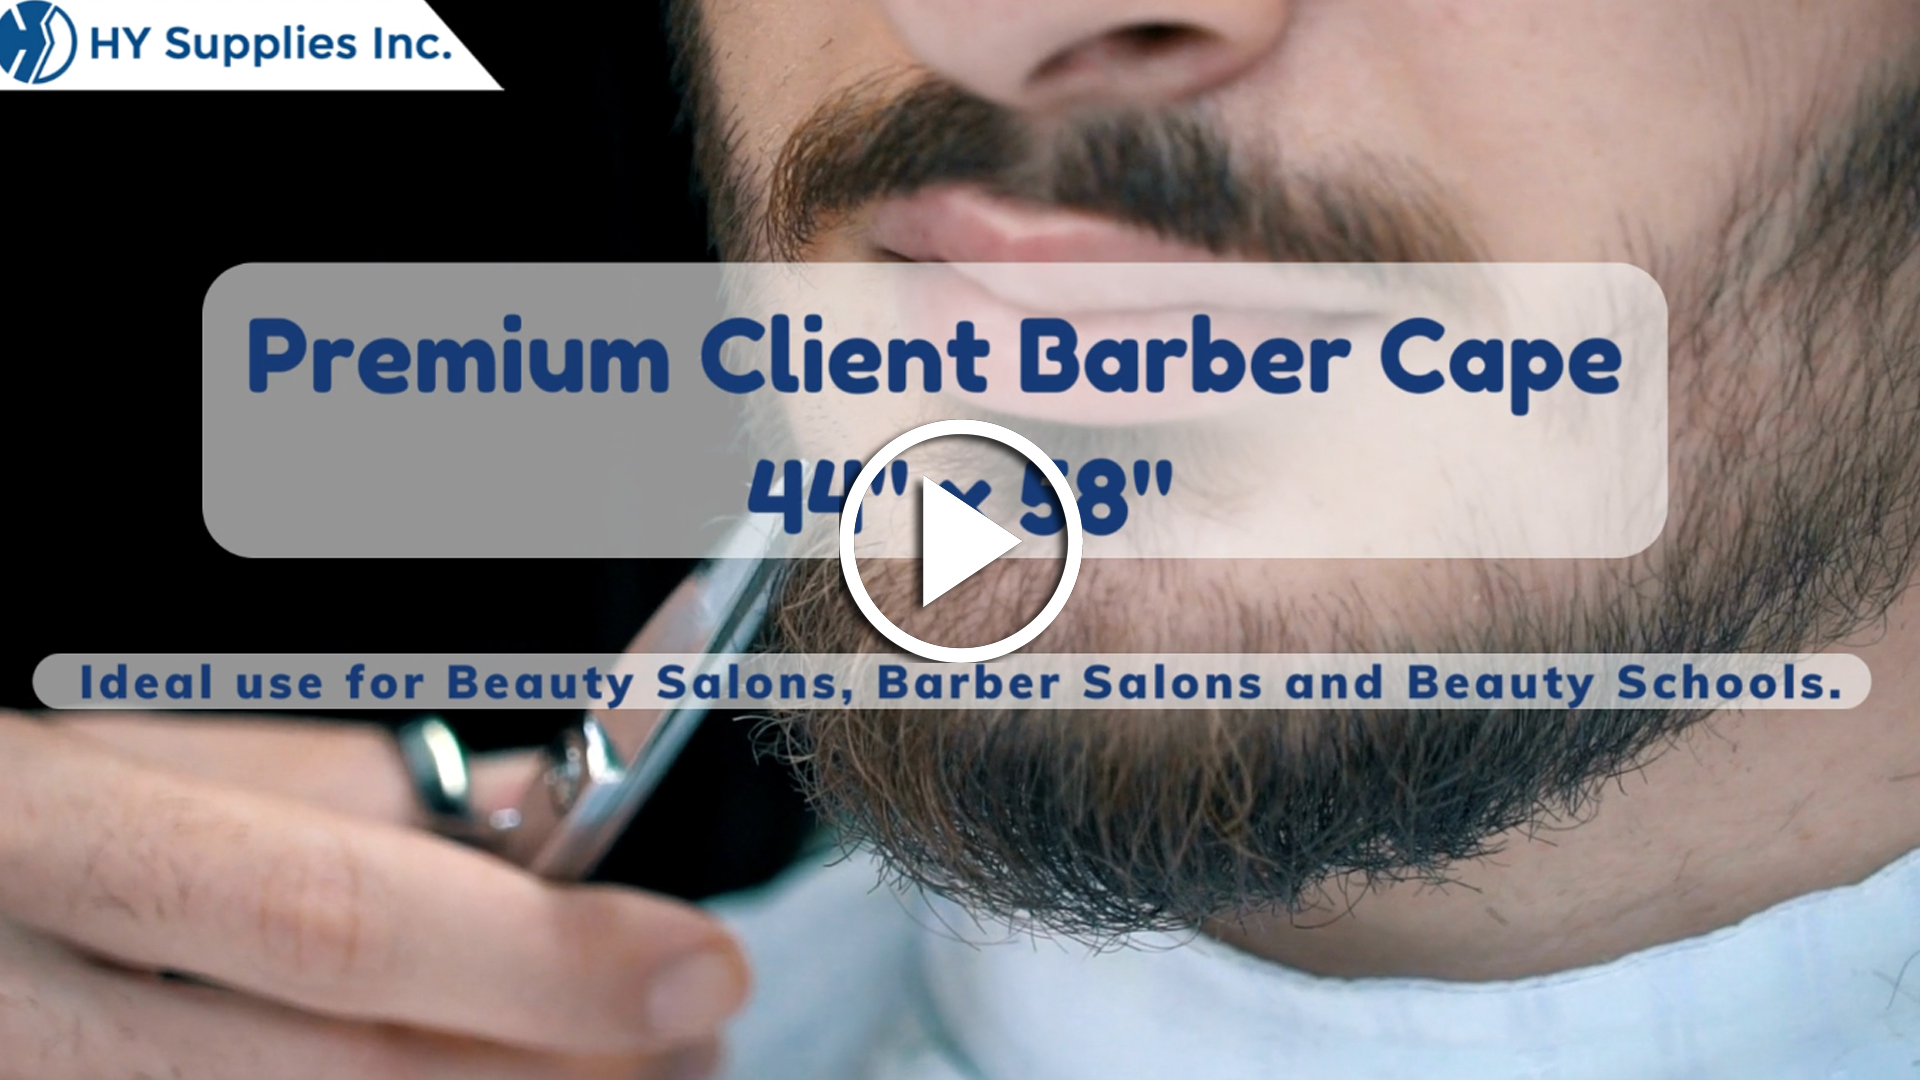 Premium Client Barber Cape - 44"" x 58""